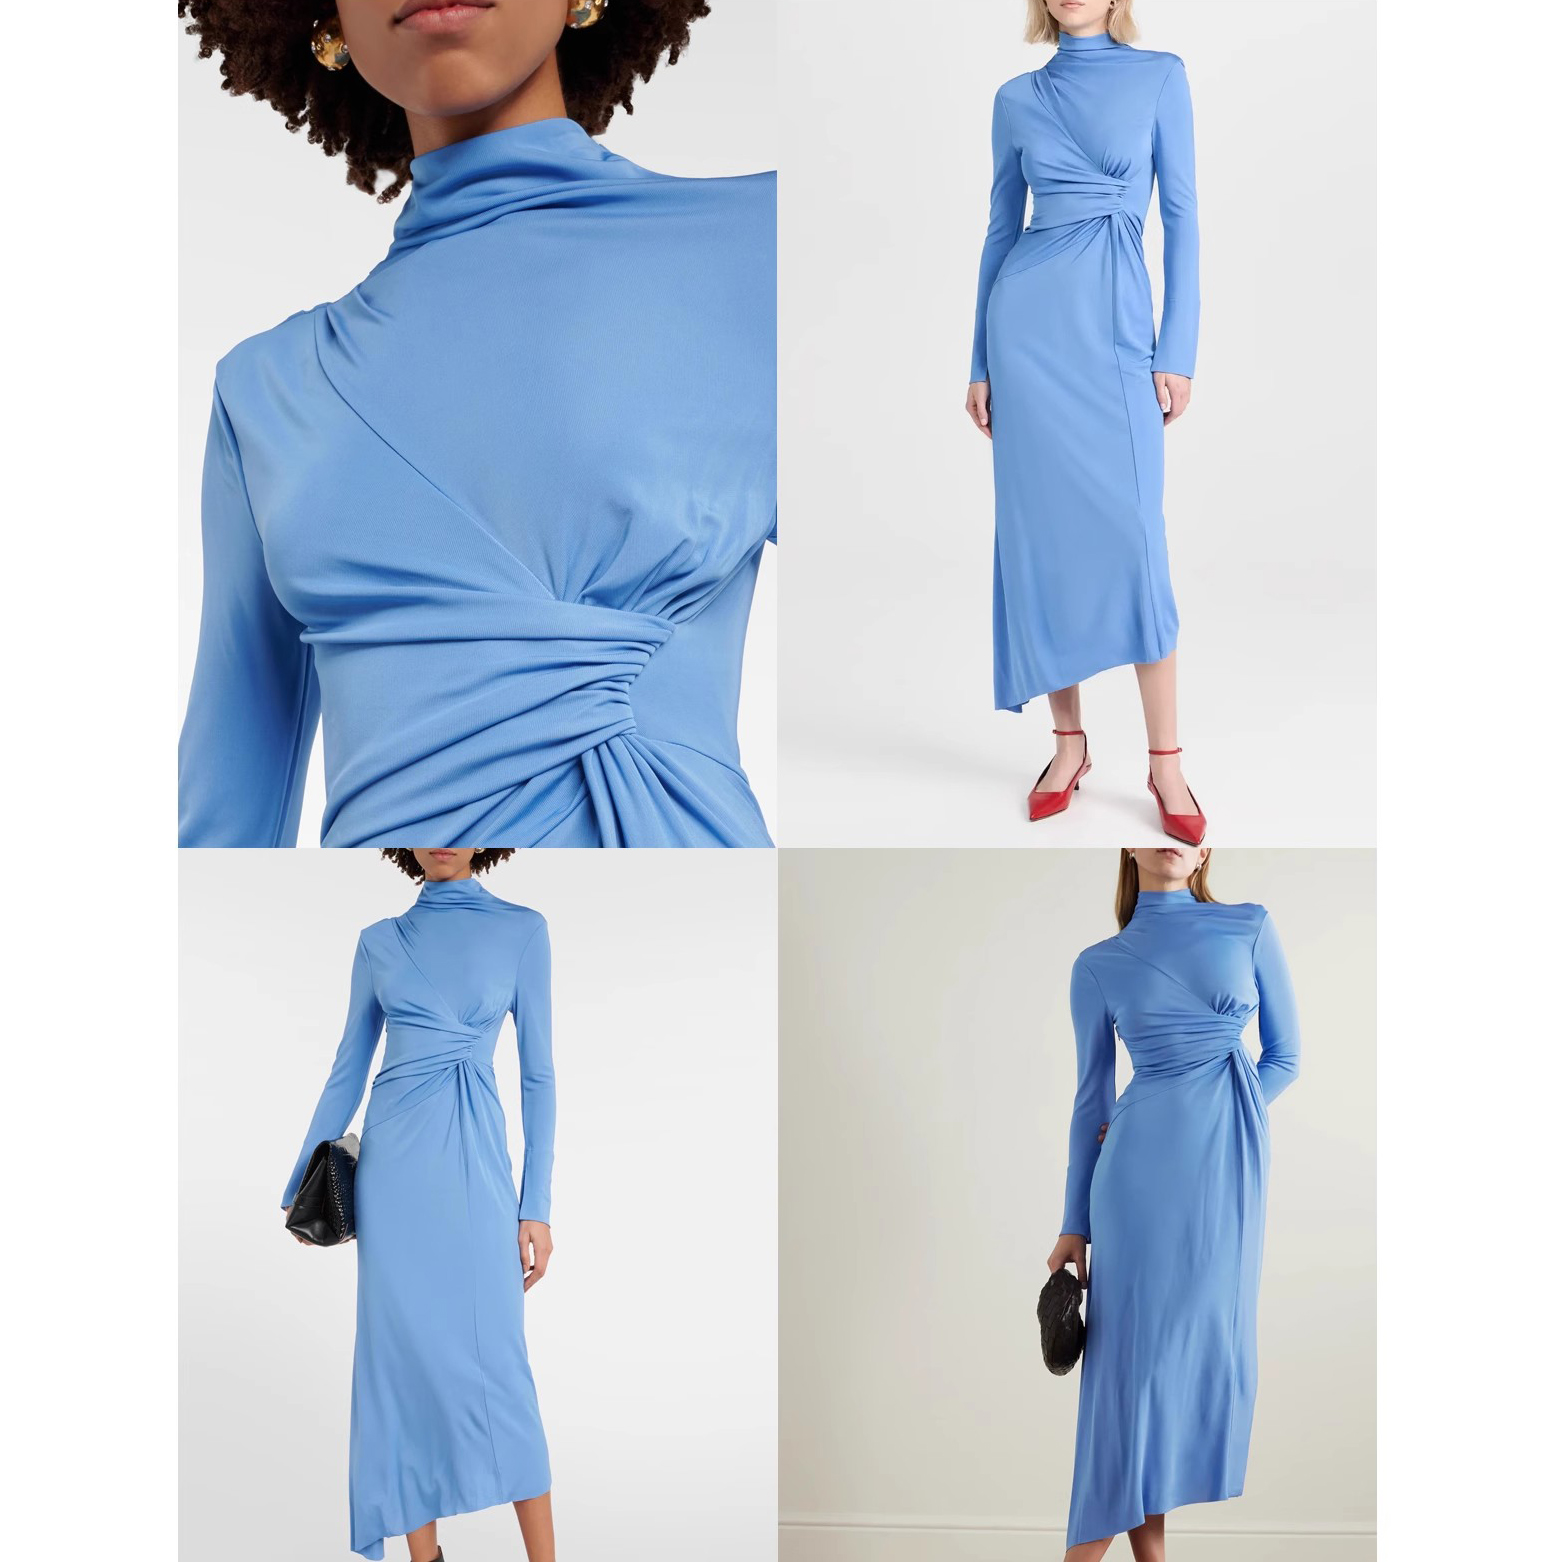 Customised Wrinkled Elegant Dresses Manufacturer (7)